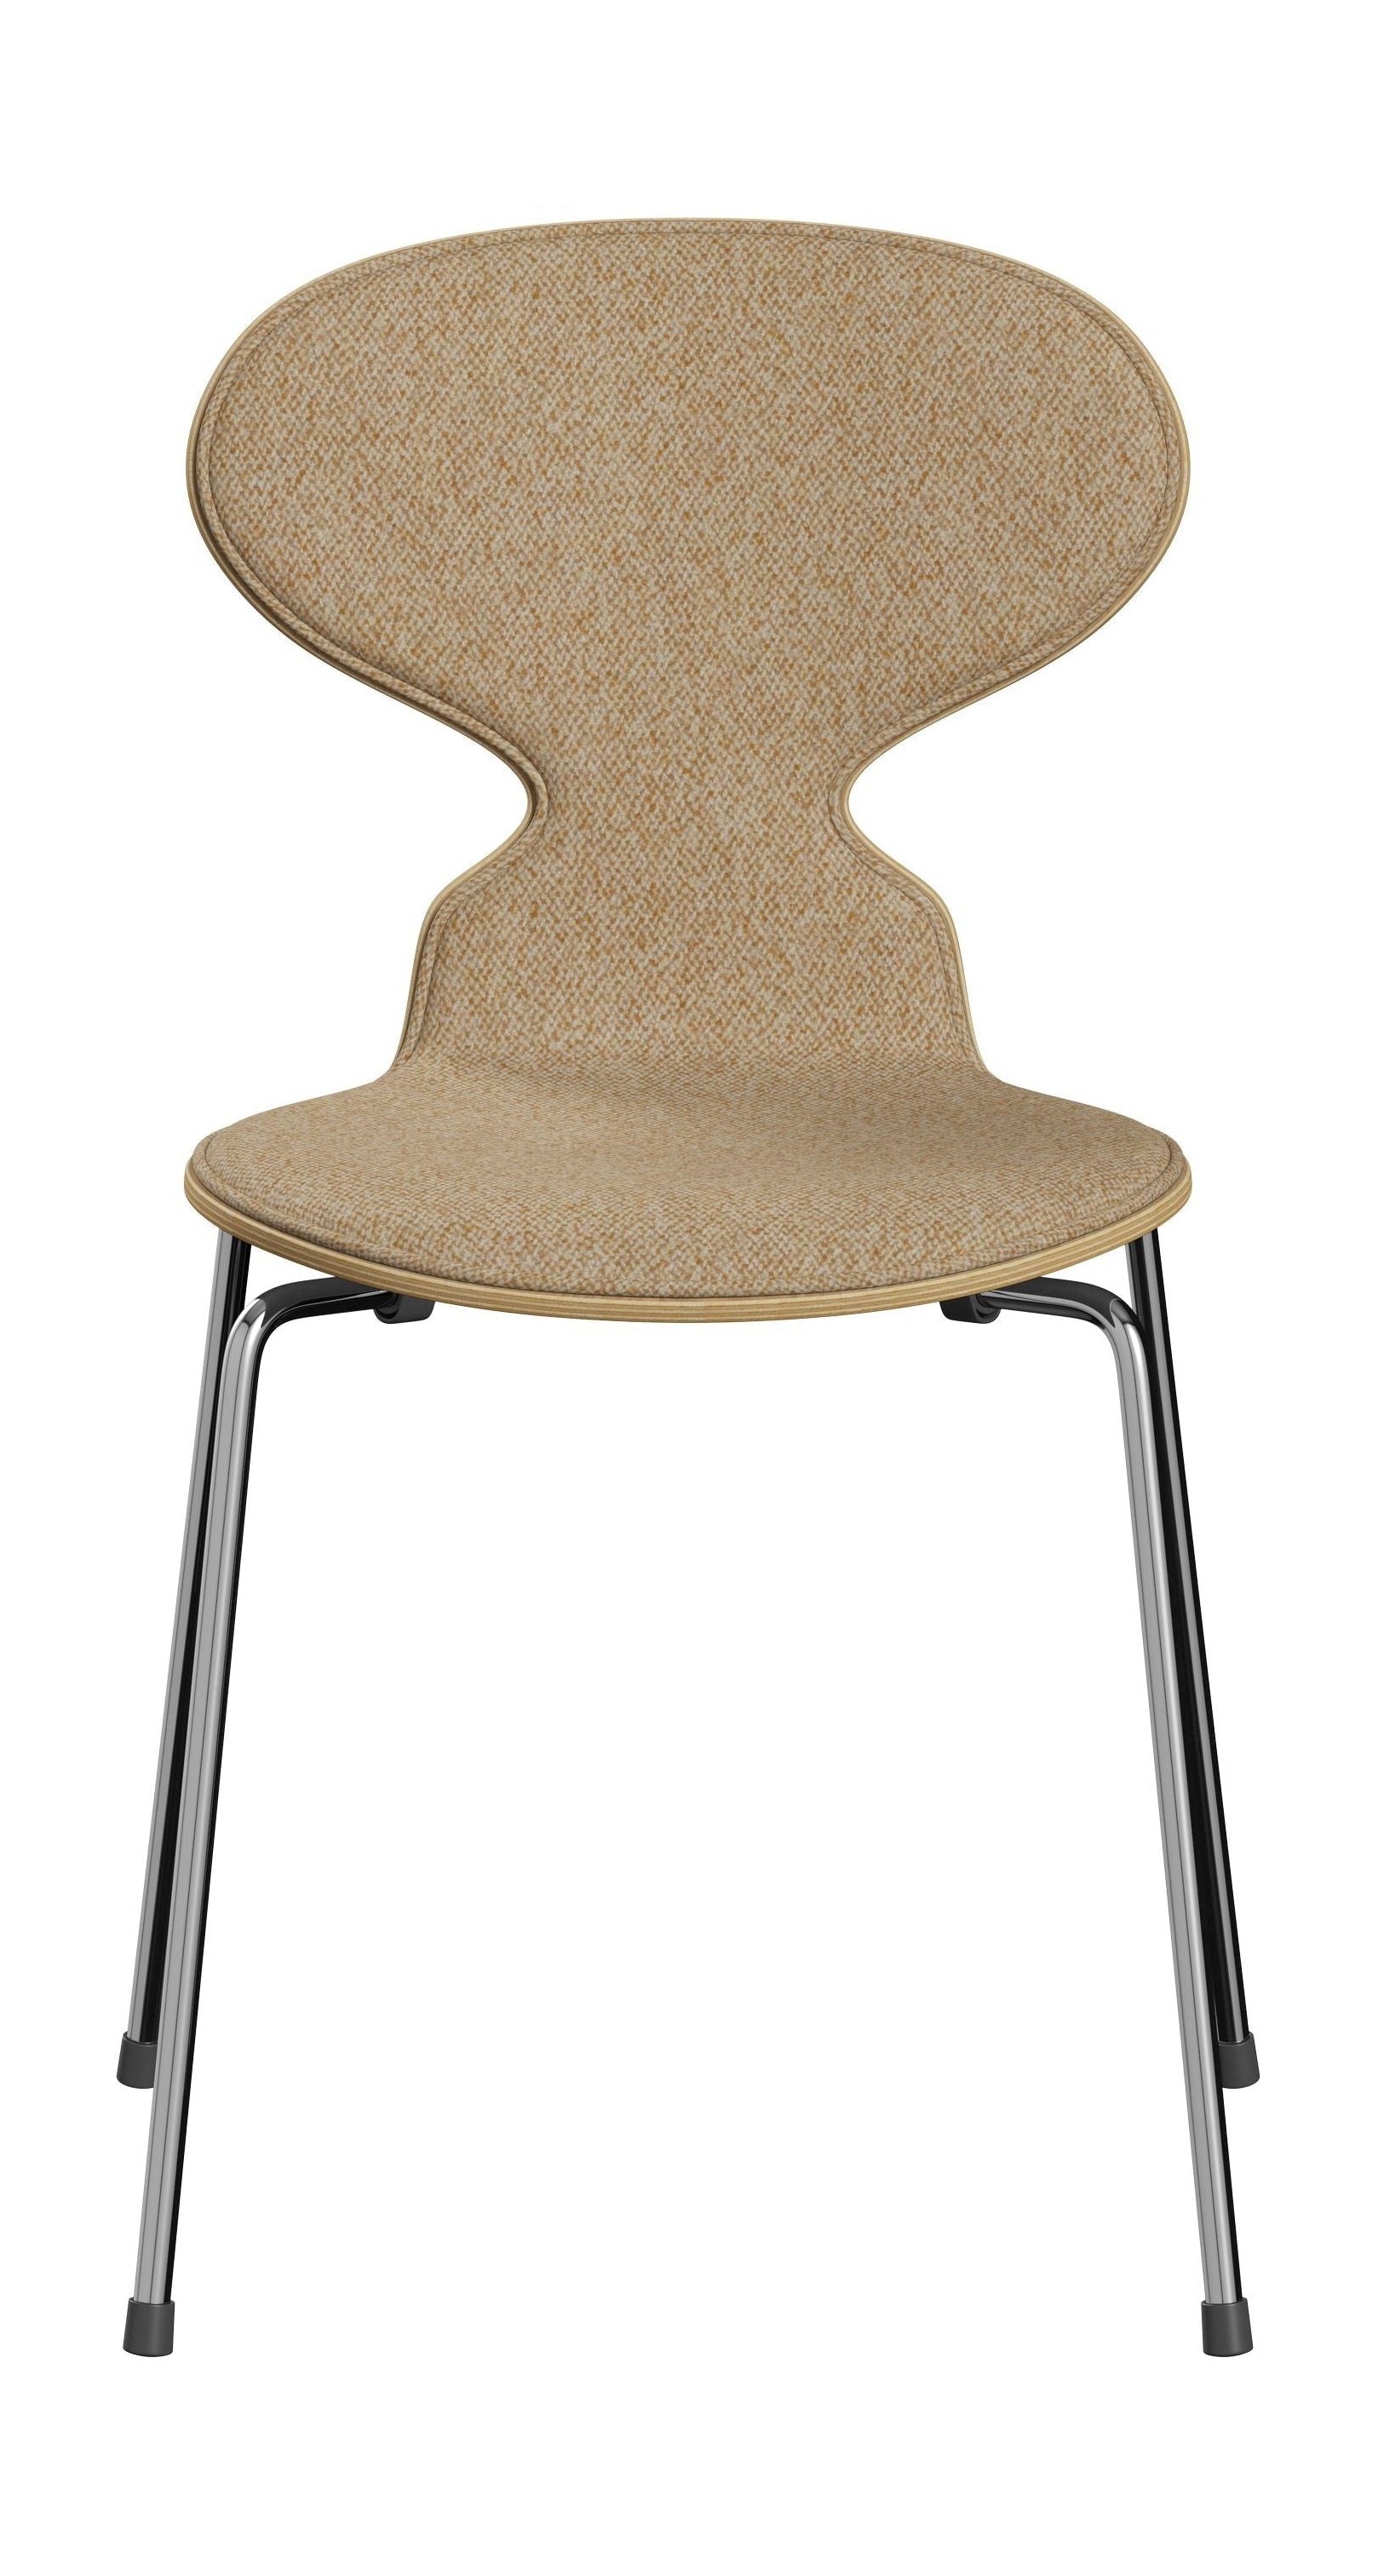 Fritz Hansen 3101 Ant stol foran polstret, skal: Ryd lakeret finer Eiche, polstring: Vanir Textile Beige Sennep, Base: Steel/Chrome